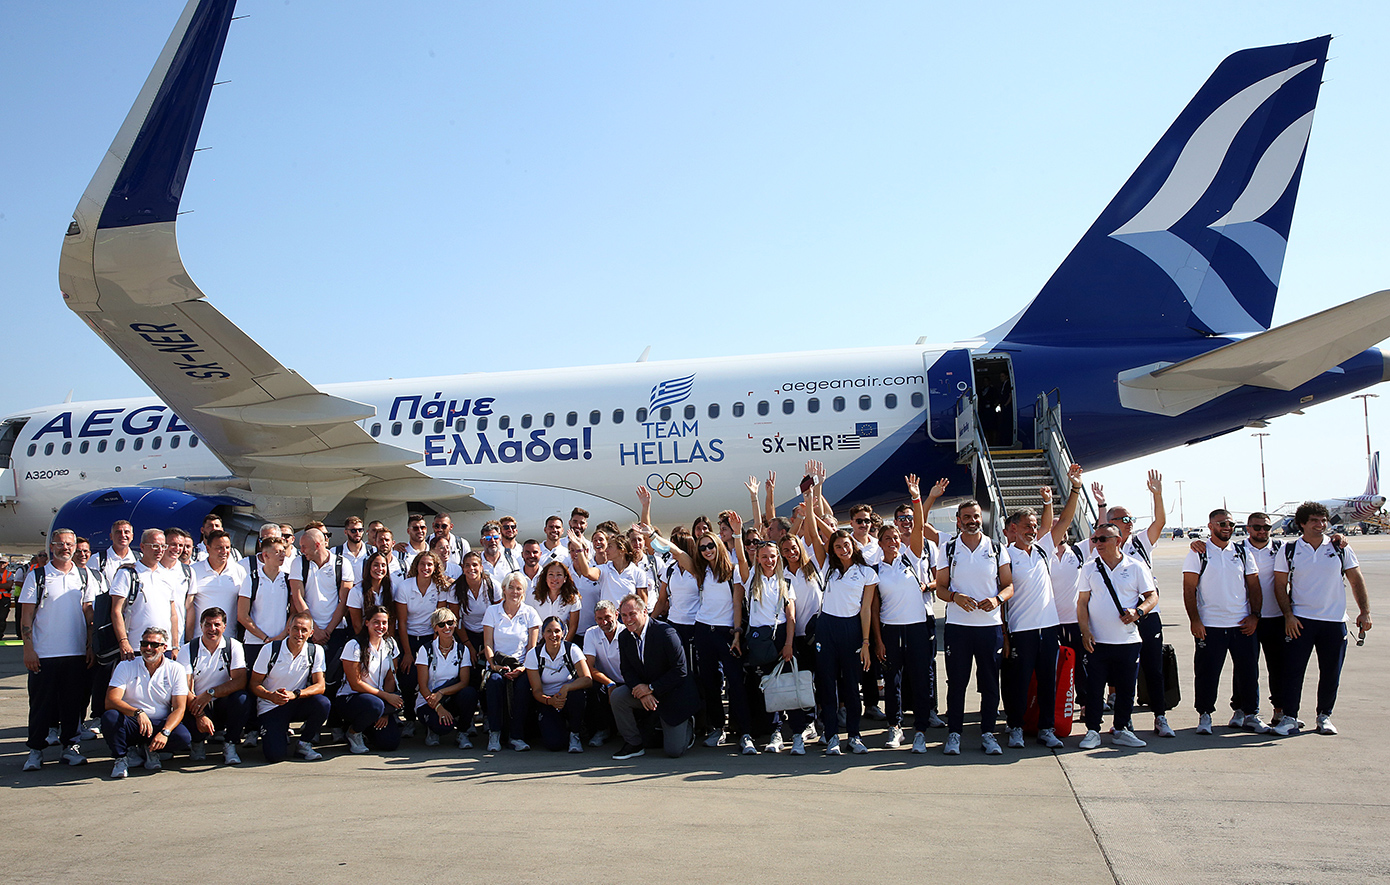 «Πάμε Ελλάδα», το μήνυμα της AEGEAN για το ταξίδι της Ελληνικής Ολυμπιακής αποστολής στο Παρίσι που μόλις ξεκίνησε